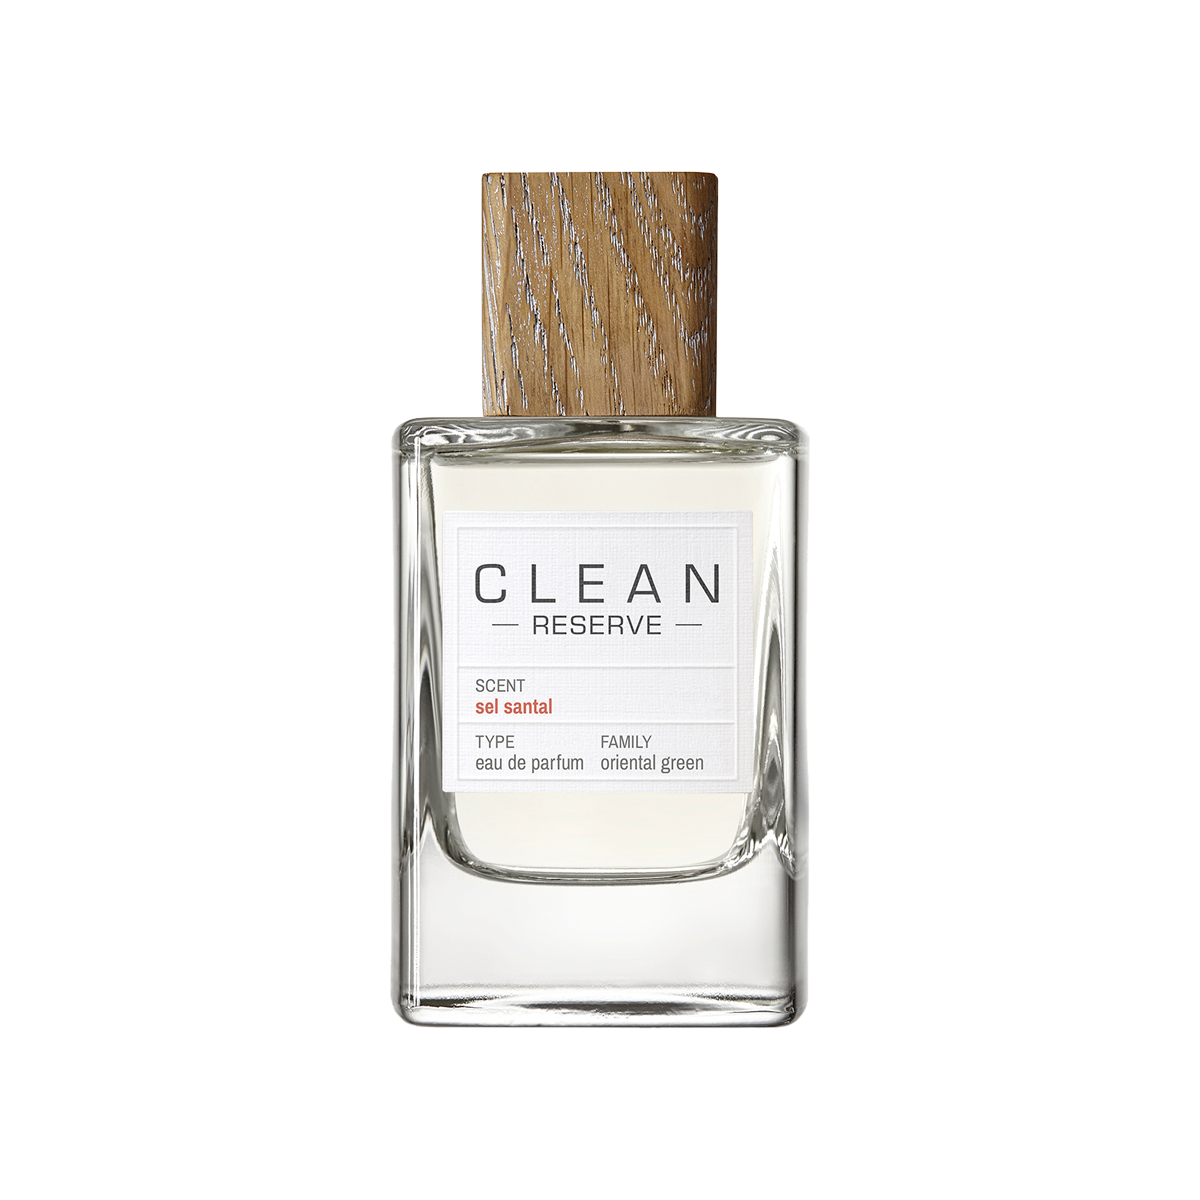 CLEAN BEAUTY - CLEAN RESERVE Sel Santal Eau de Parfum